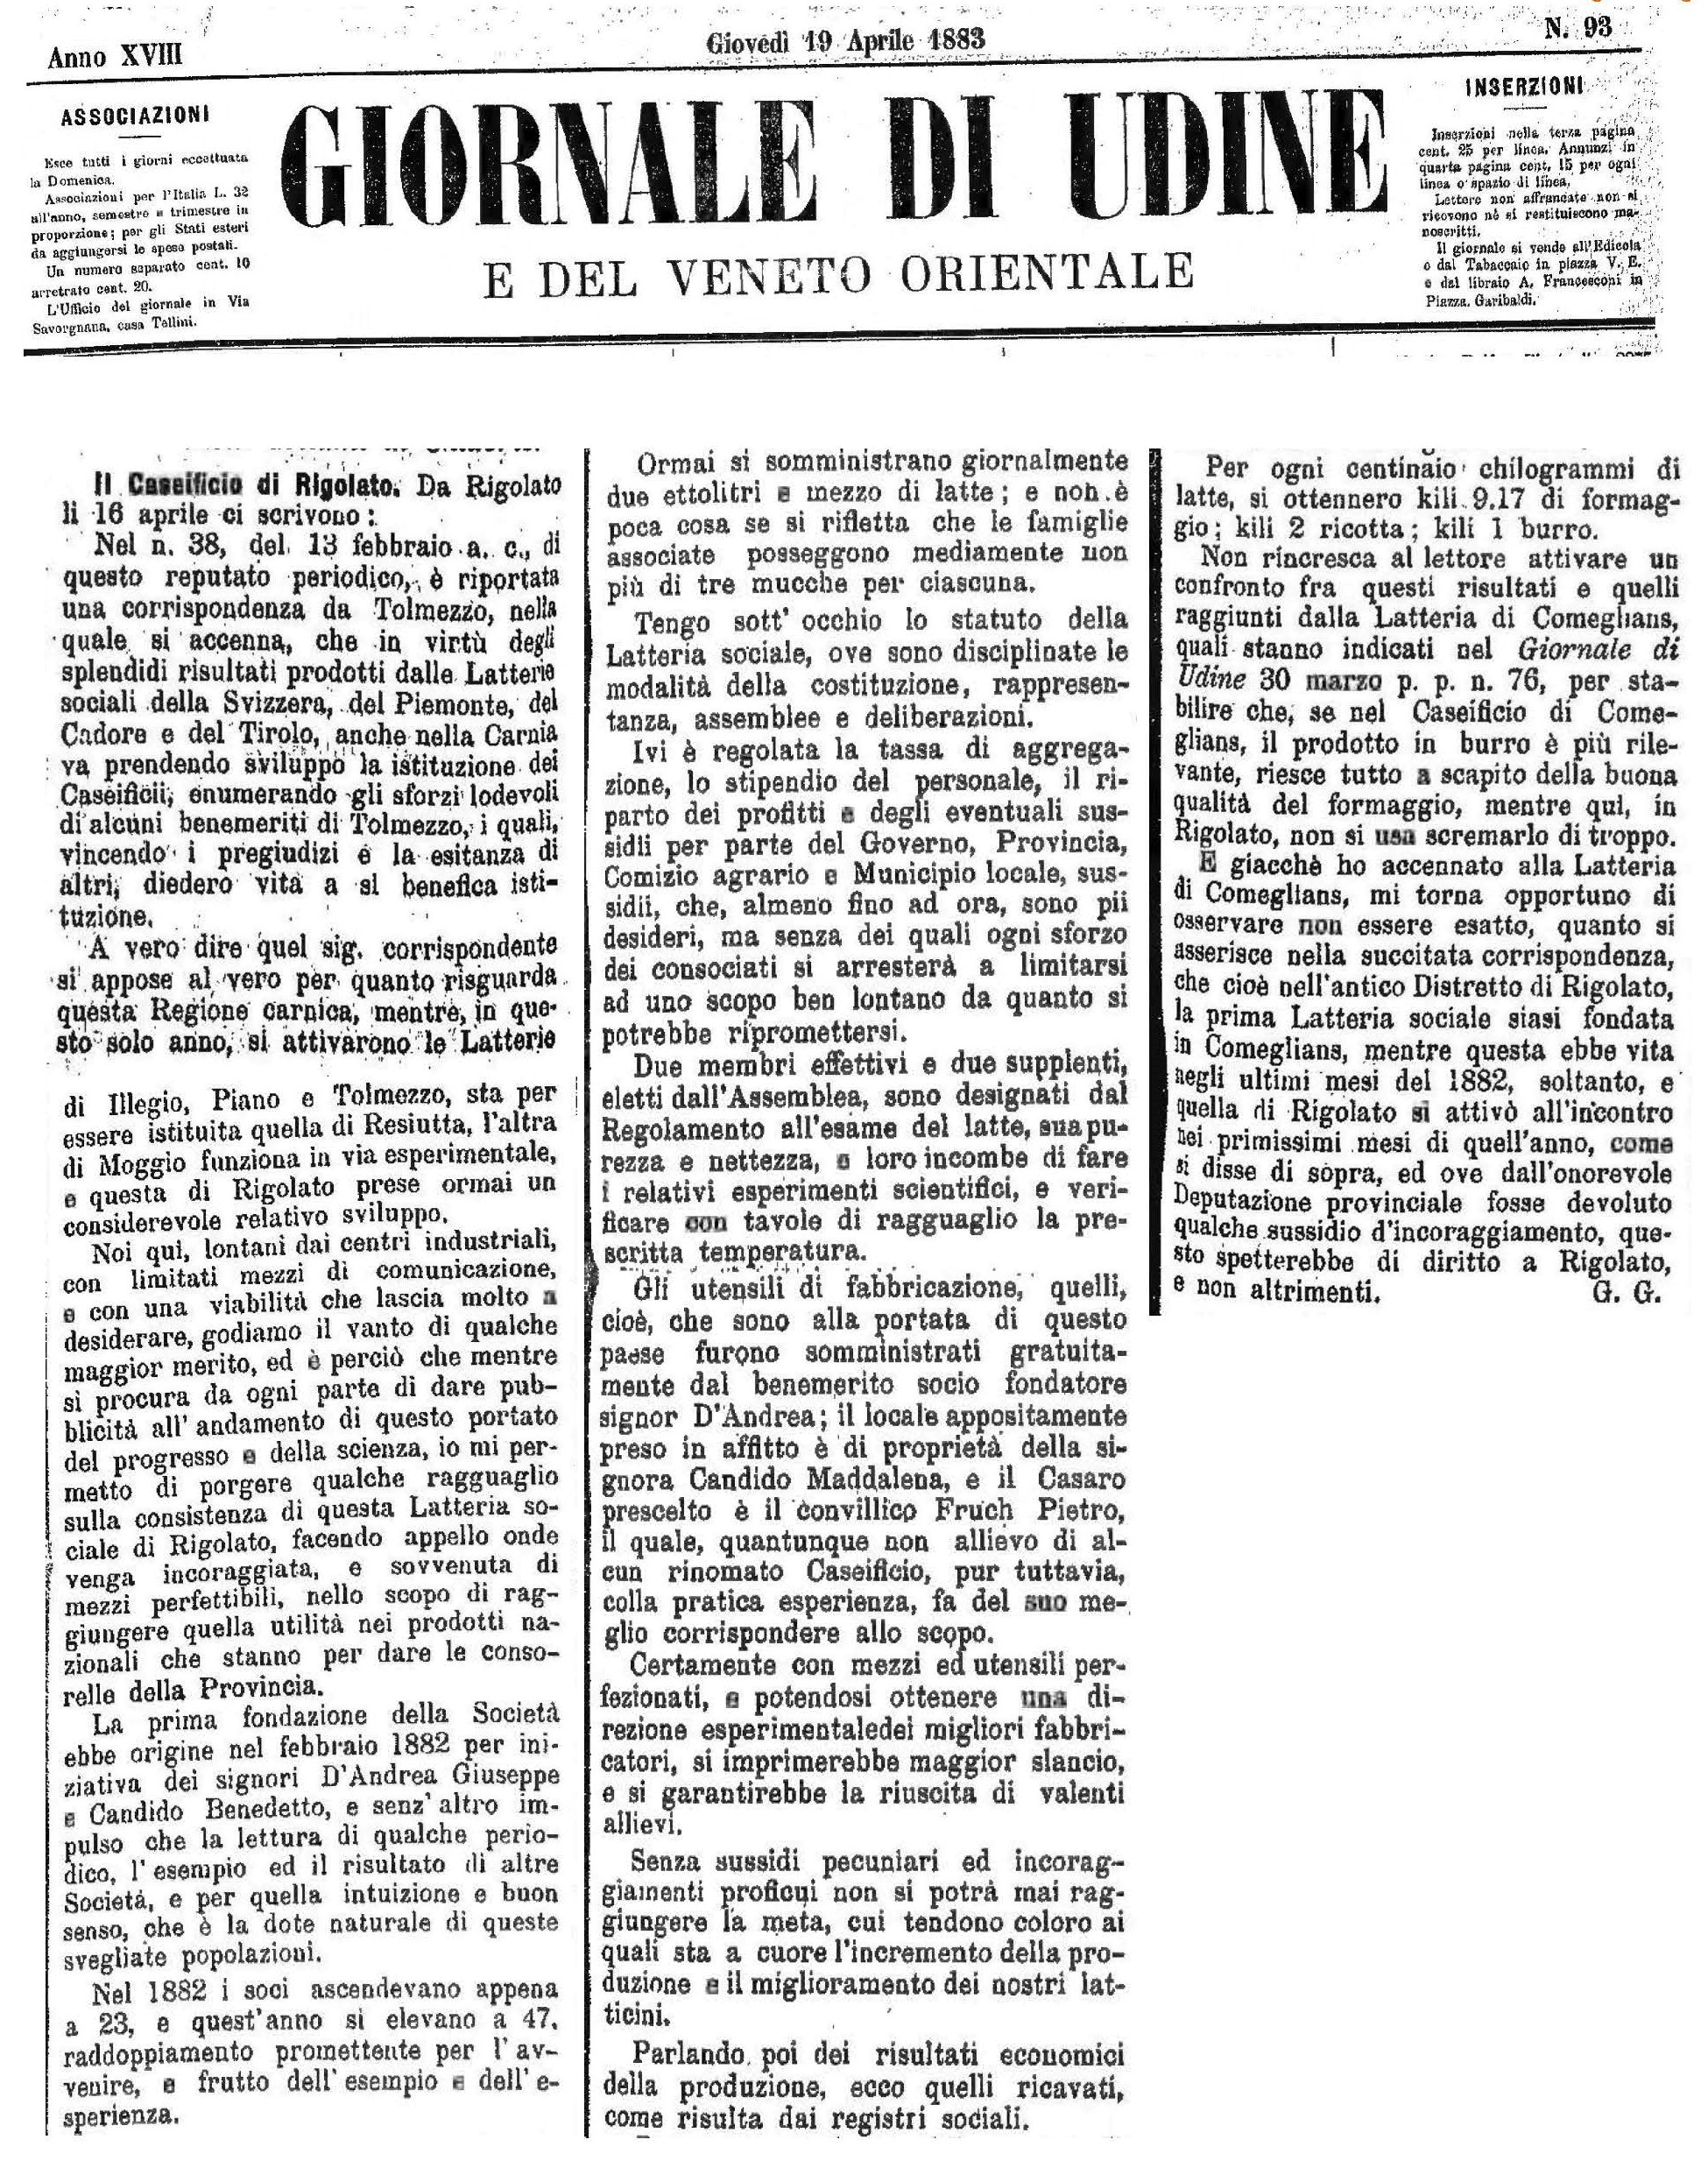 Il Caseificio di Rigolato (dal Giornale di Udine del 19 aprile 1883)